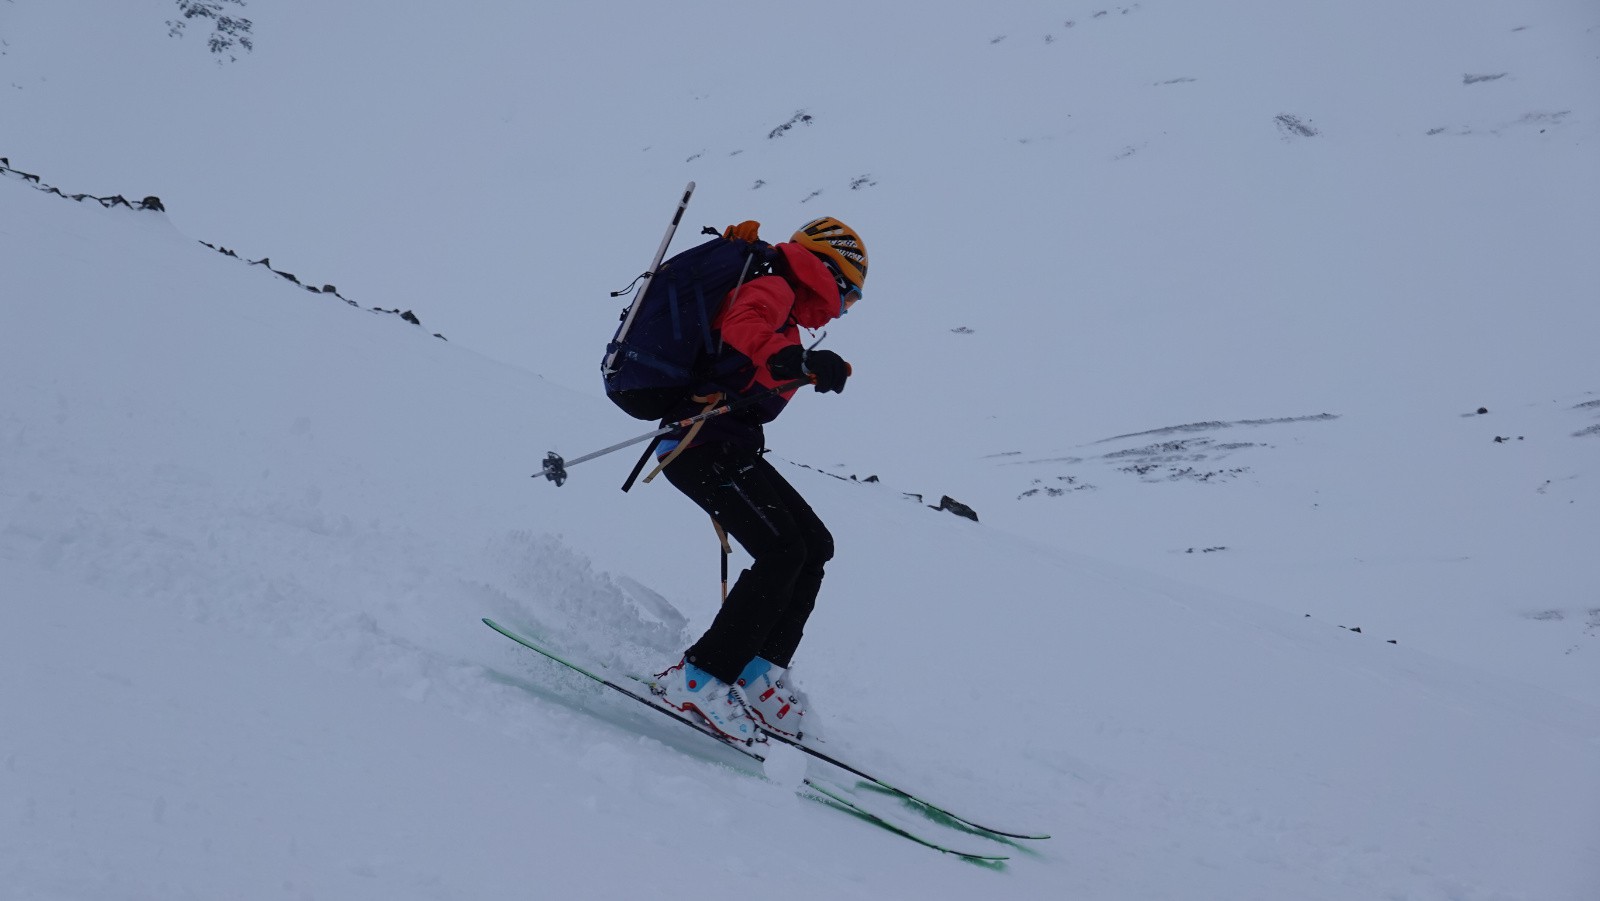 Neige néanmoins un peu physique à skier